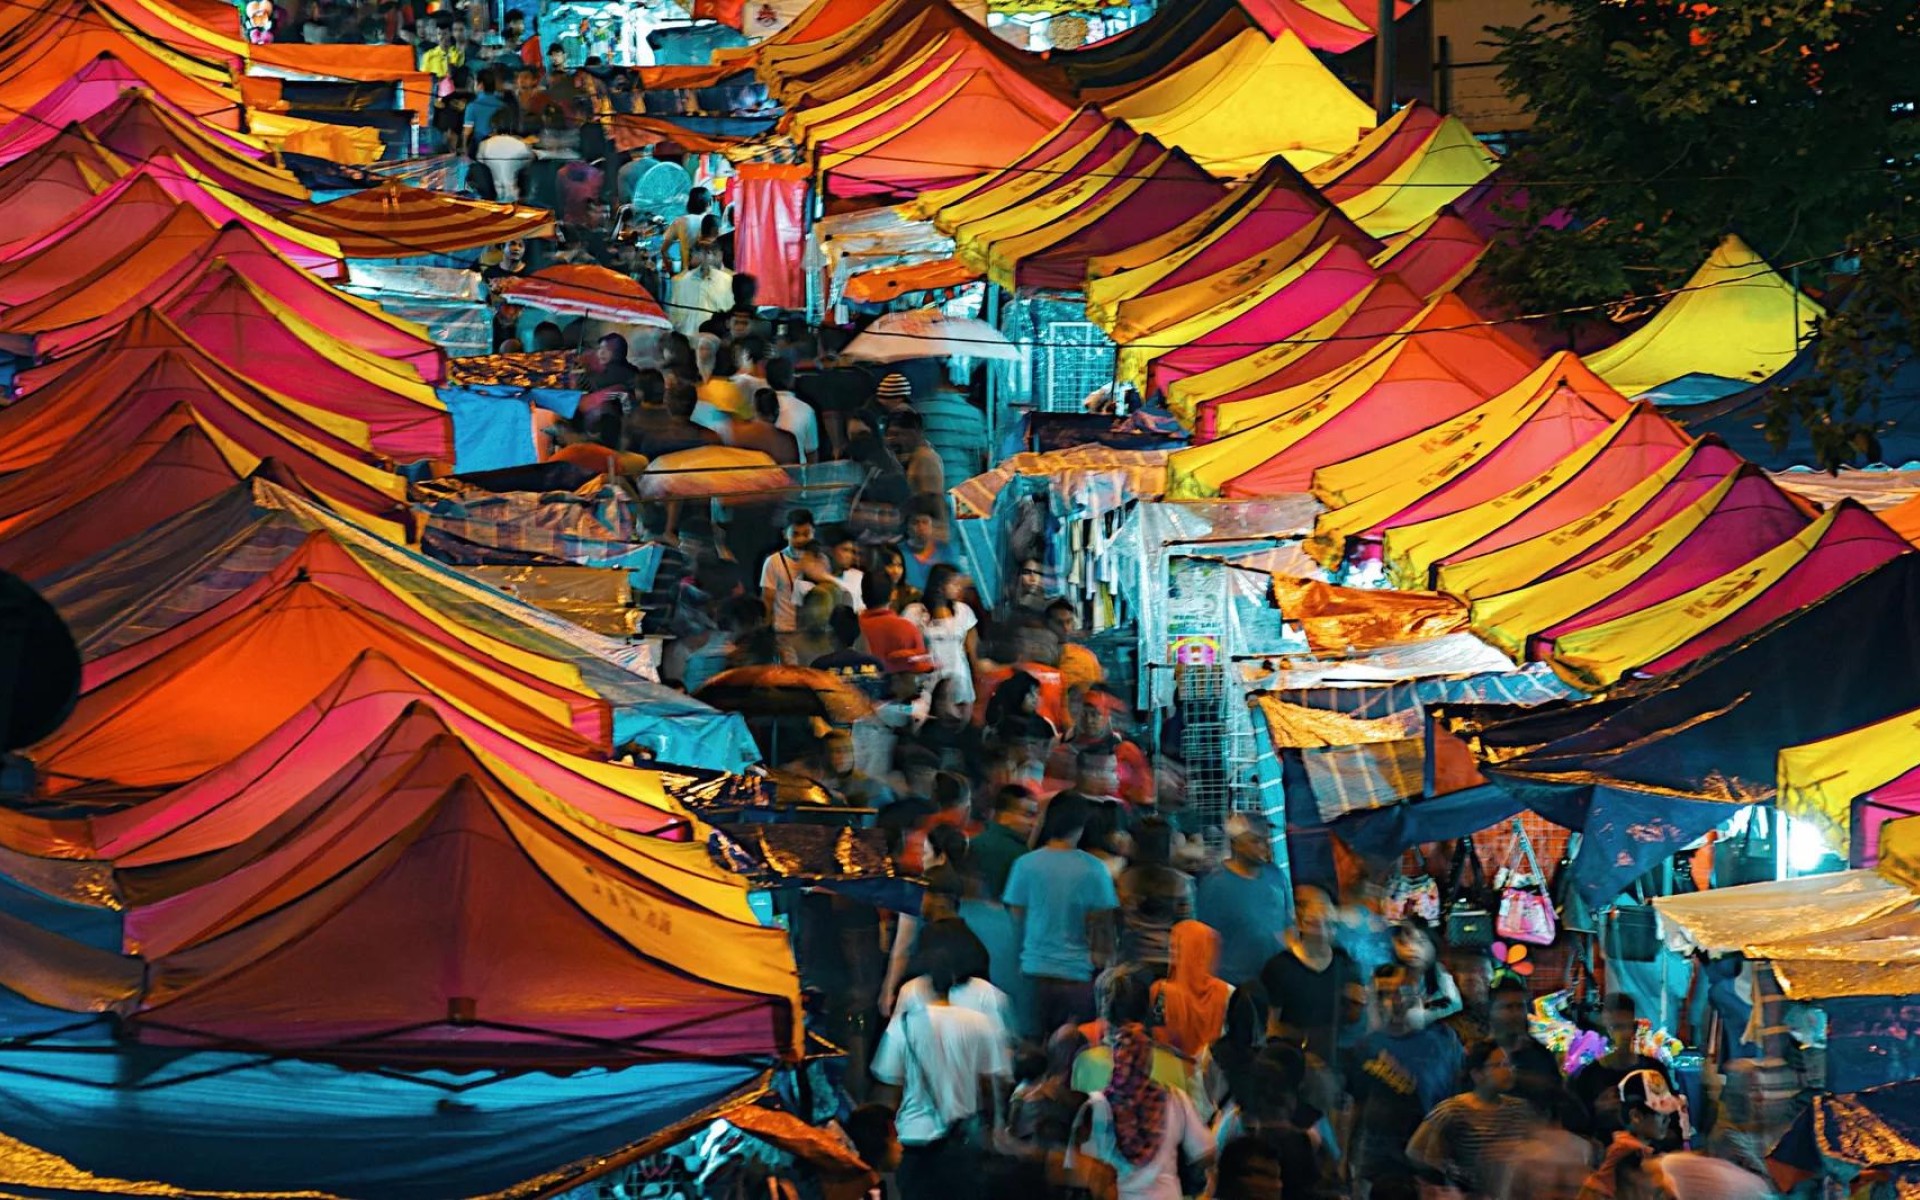 People at night market, Kuala Lumpur, Malaysia.